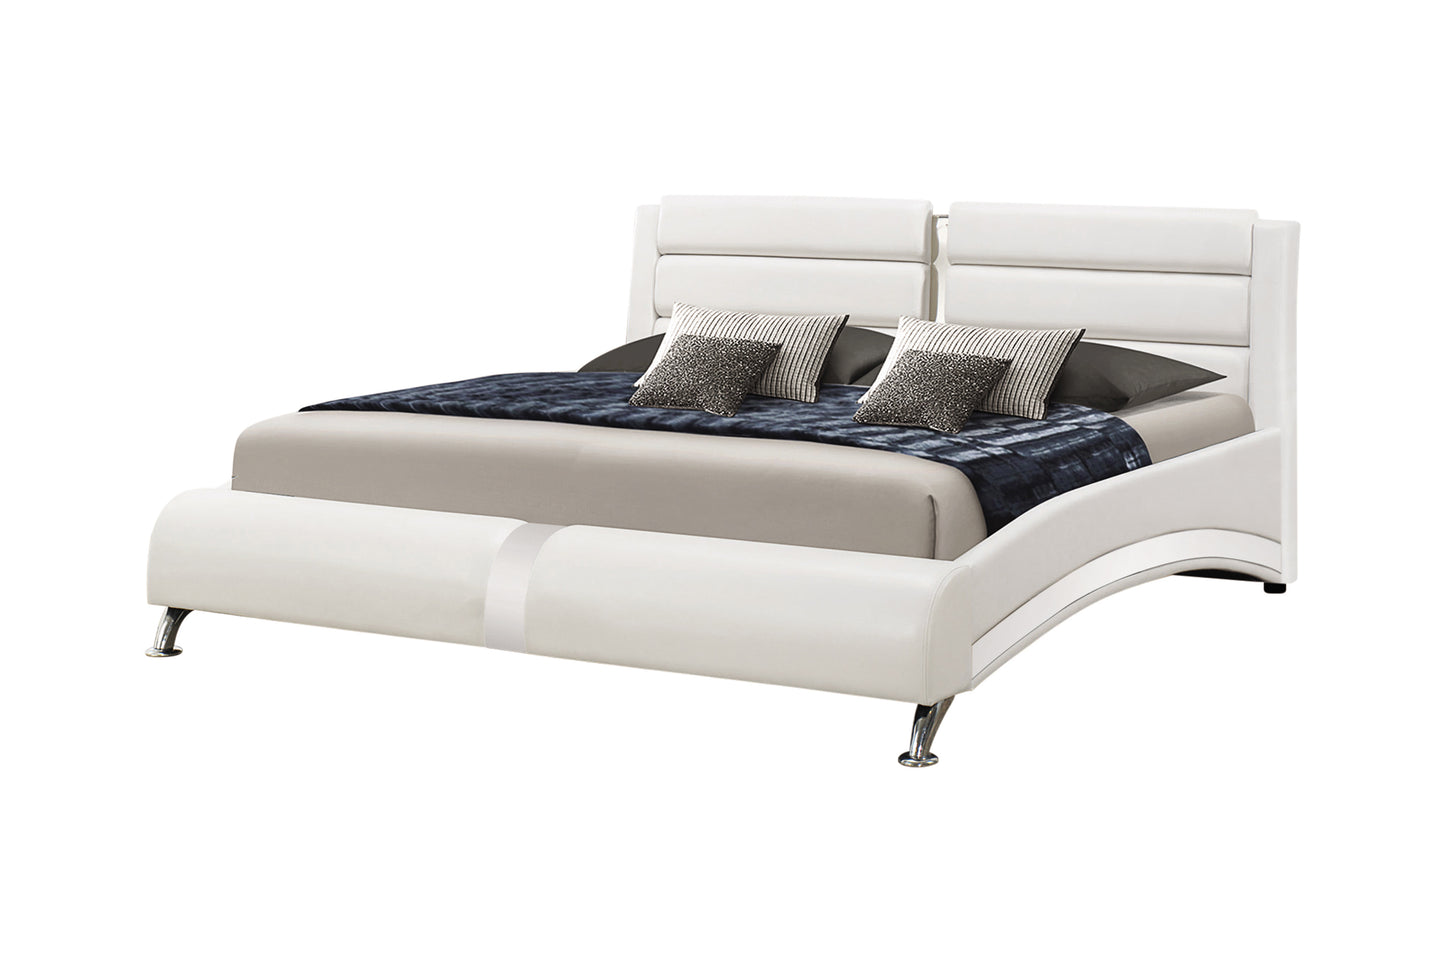 Jeremaine Eastern Bed Room Set Upholstered White 300345